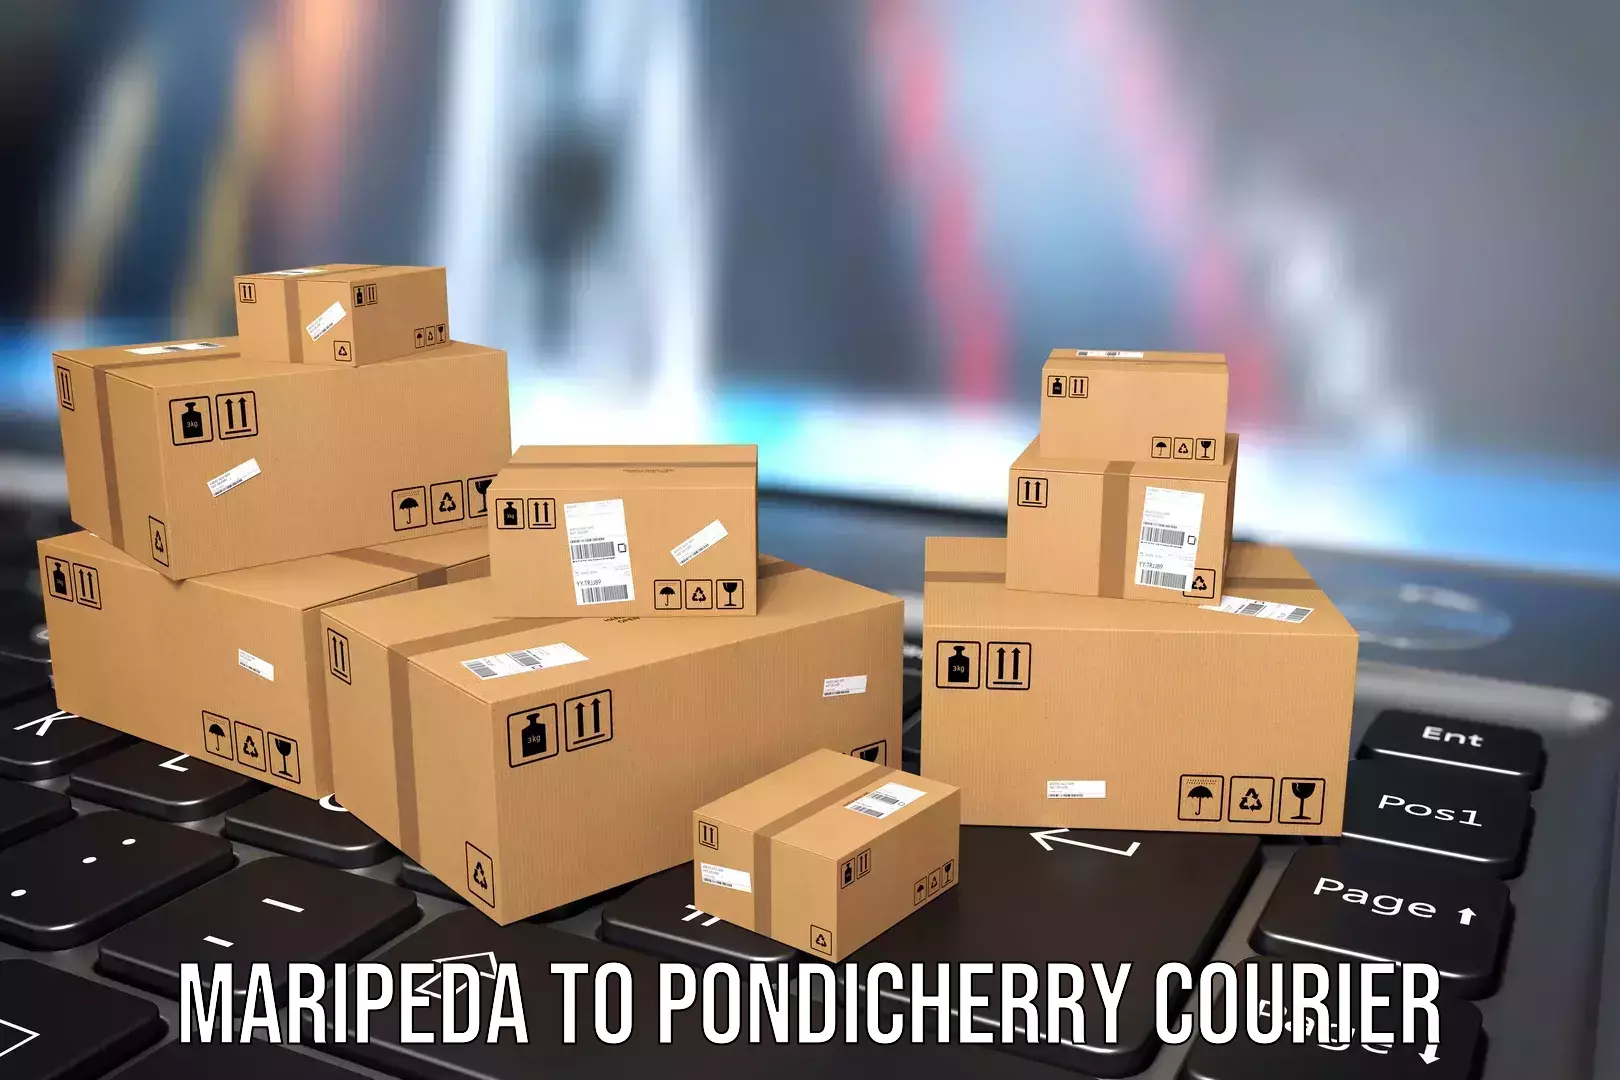 Electronic items luggage shipping Maripeda to Pondicherry University